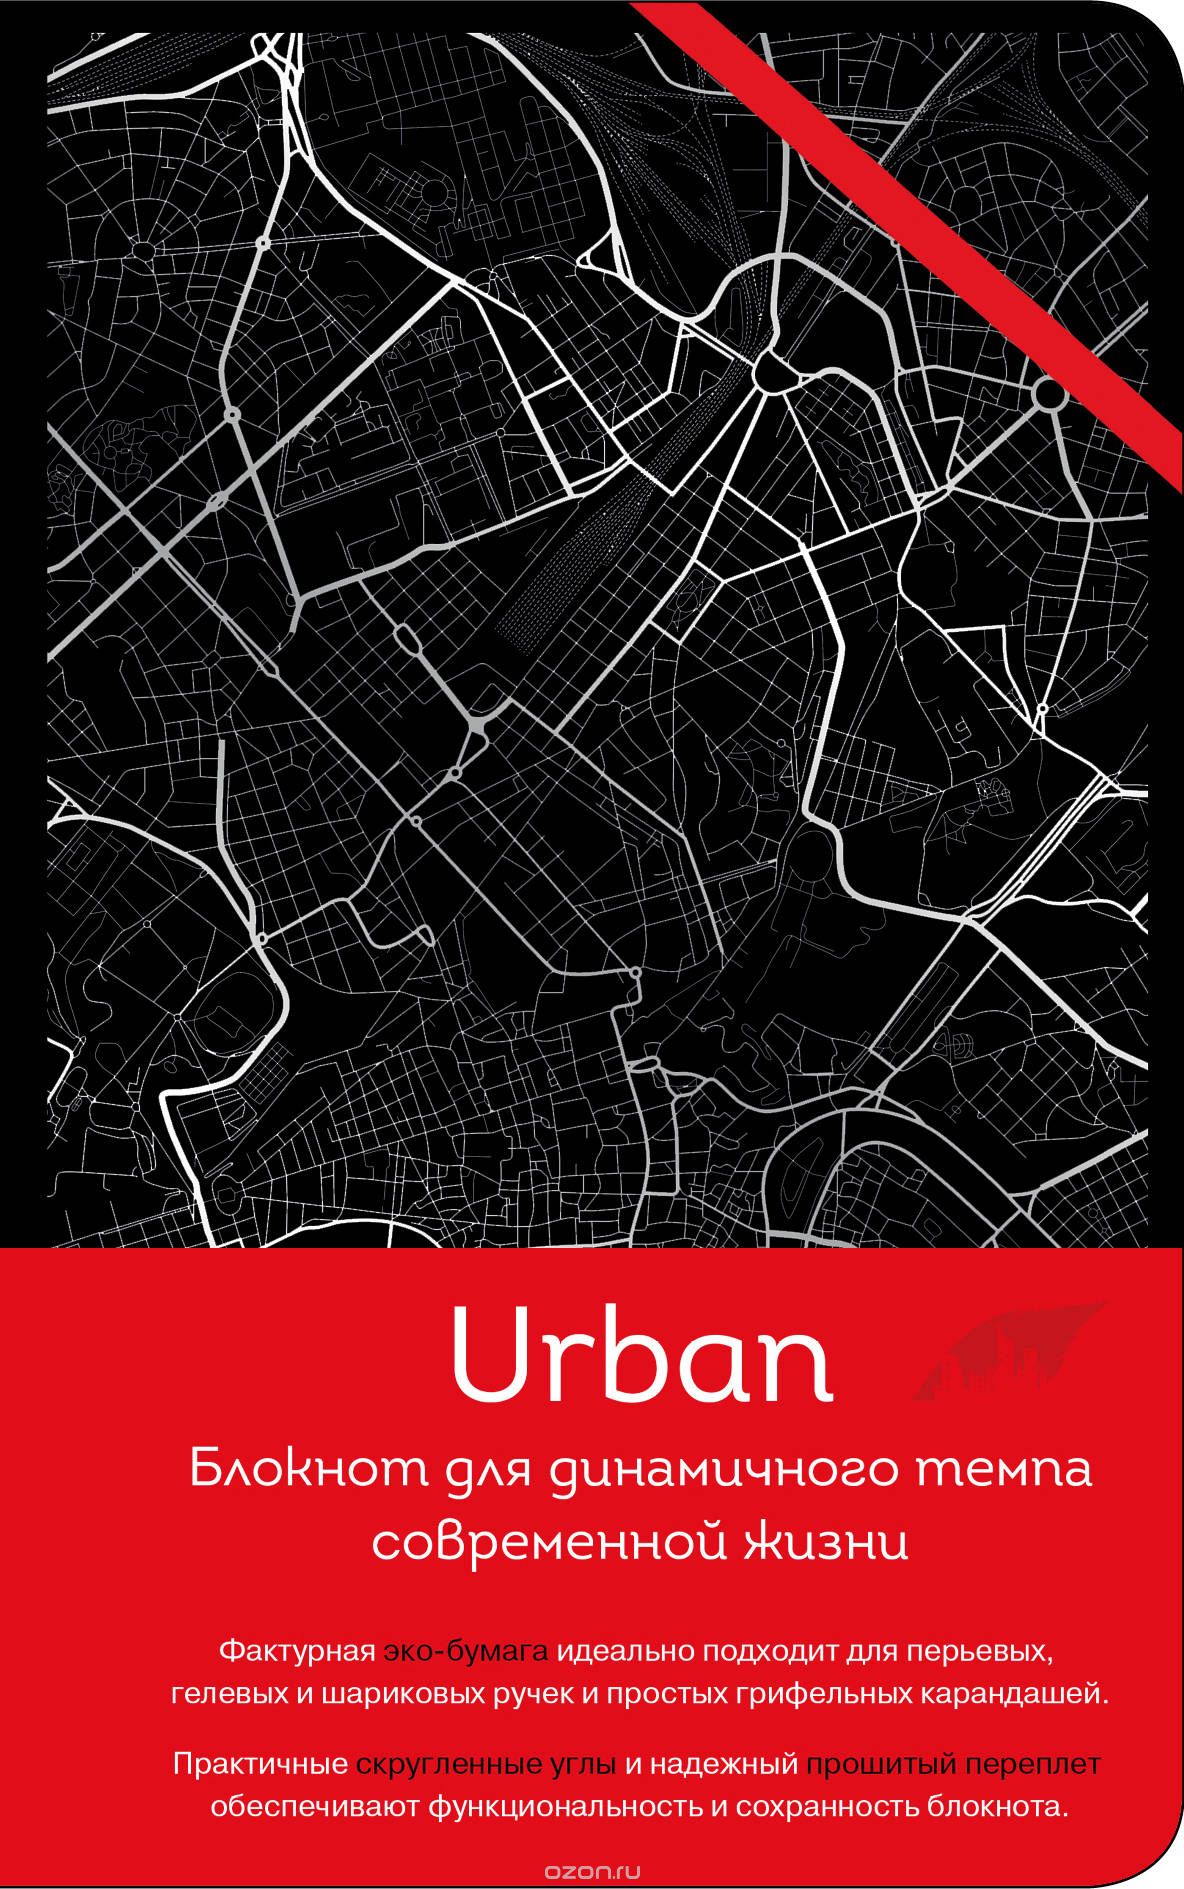  Urban 